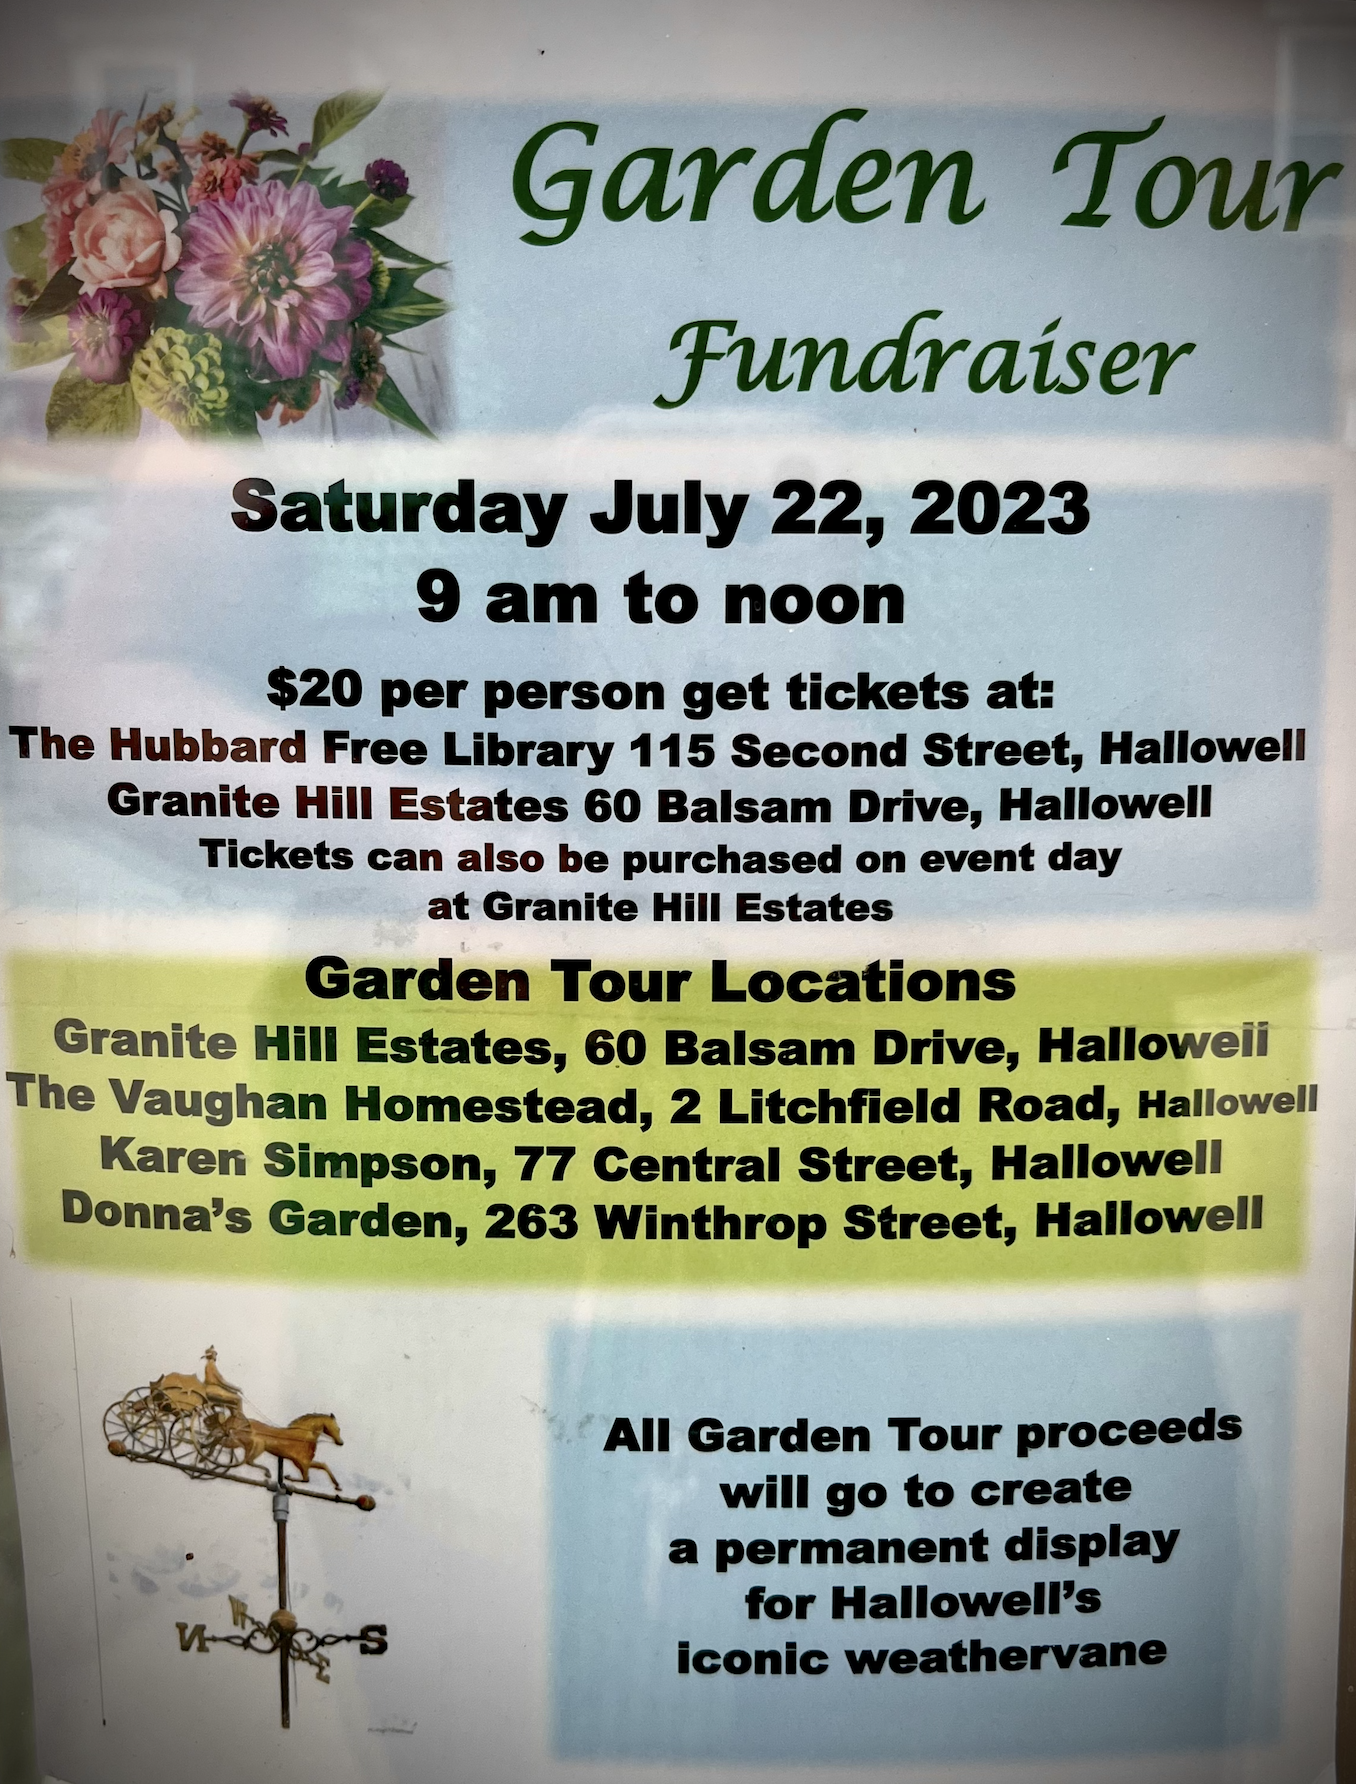 Saturday, July 22, 2023: Garden Tour Weathervane Fundraiser